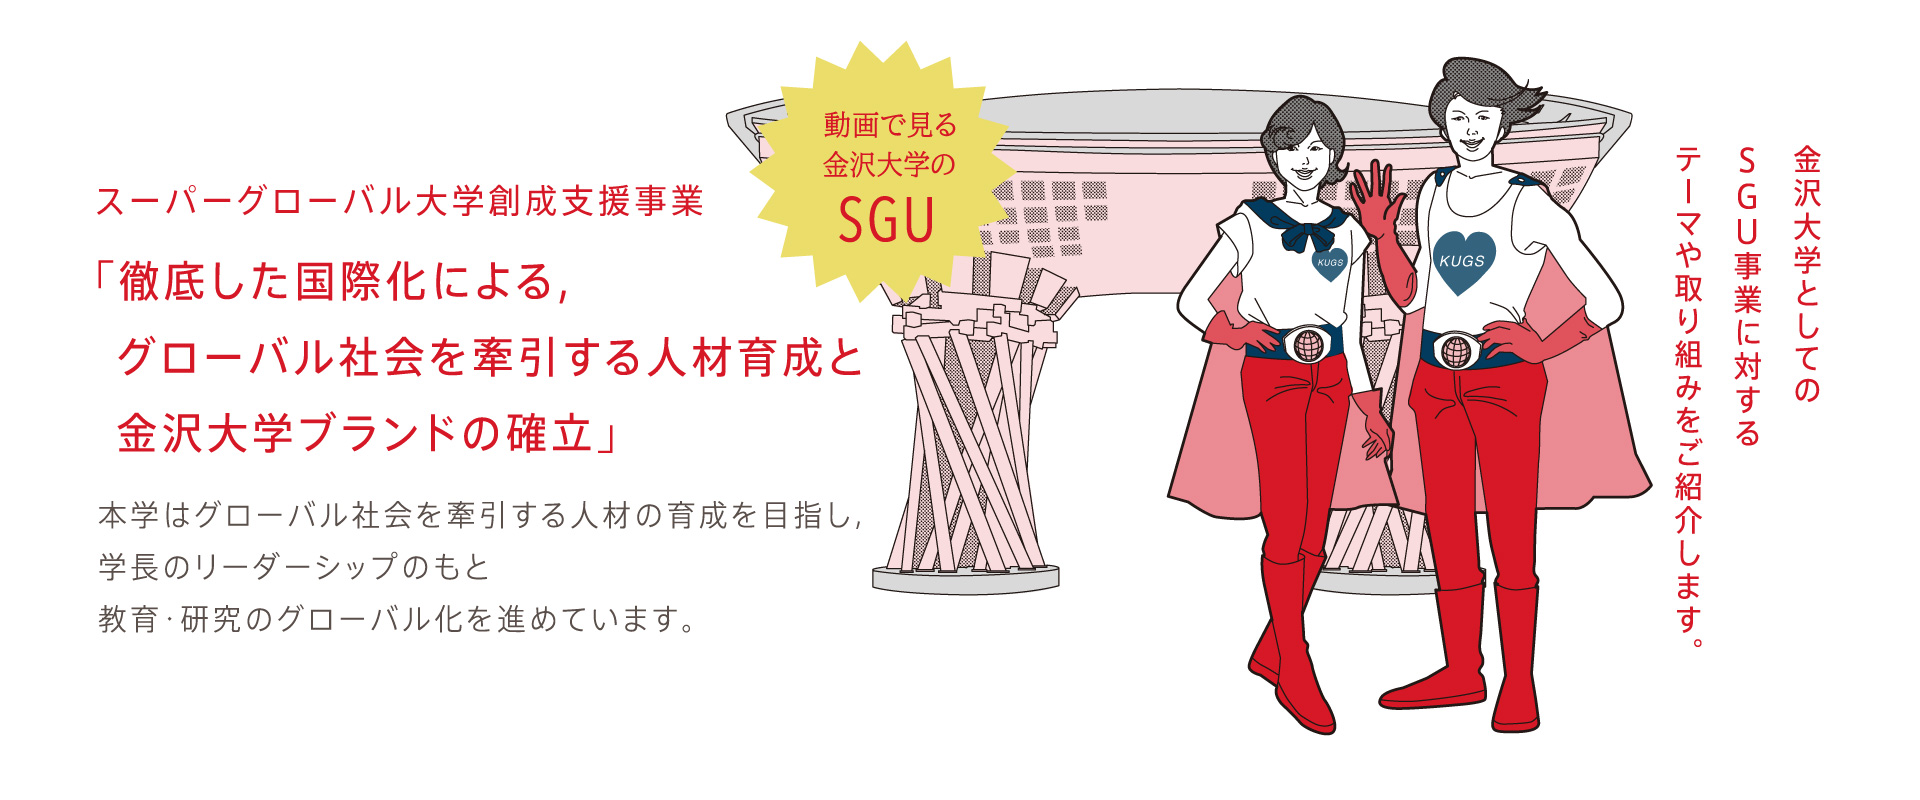 Kanazawa University’s SGU project